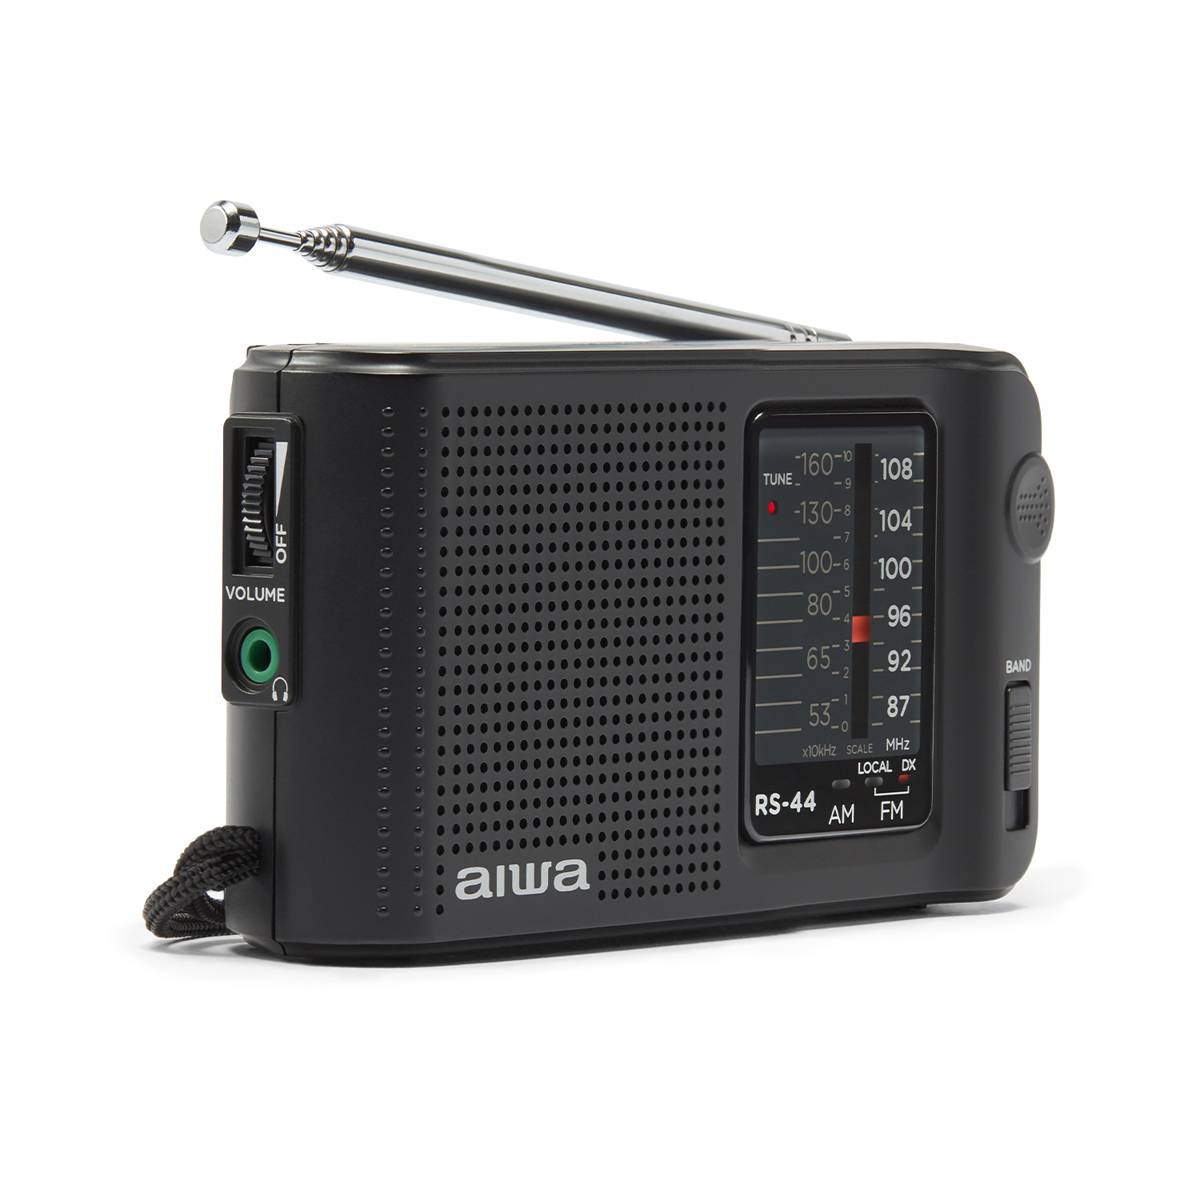 AIWA RS-44 Pocket PORTABLE RADIO, BLACK FM, Radio